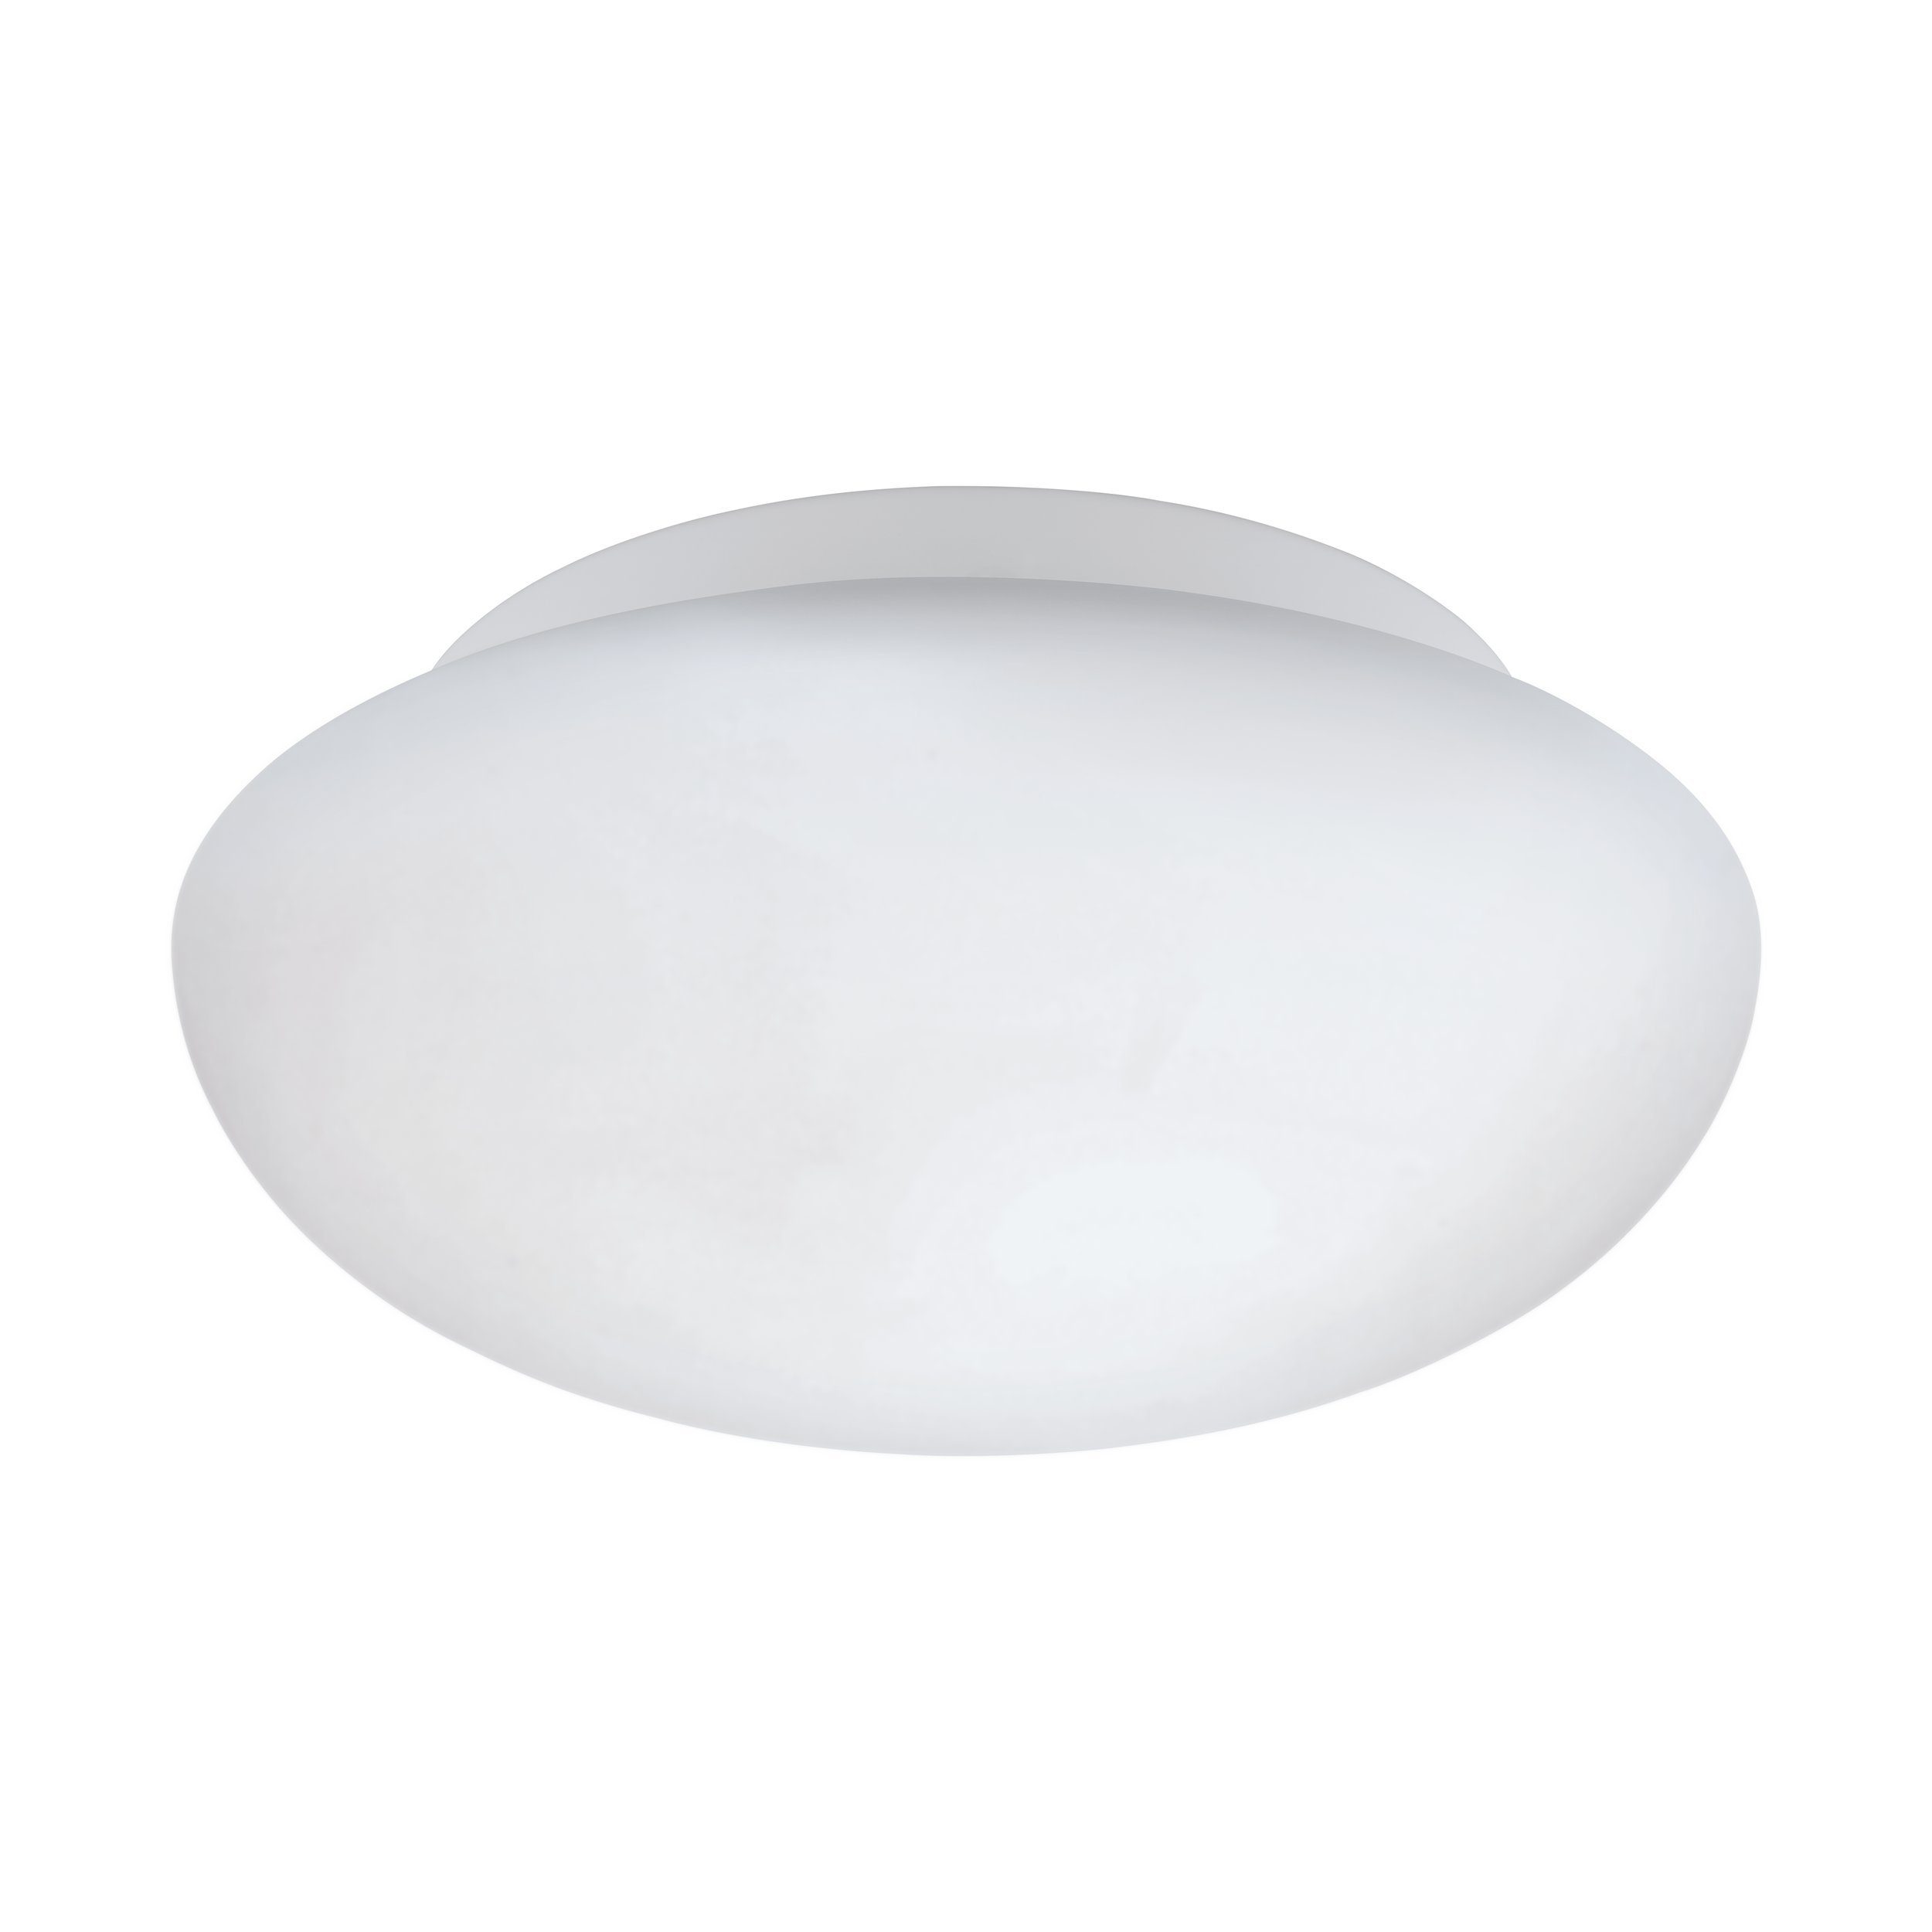 EGLO LED Deckenleuchte Ella, Leuchtmittel exklusive, Ø 28 cm, Wandlampe,  Deckenleuchte, Weiß, Wohnzimmerlampe, E27 Fassung